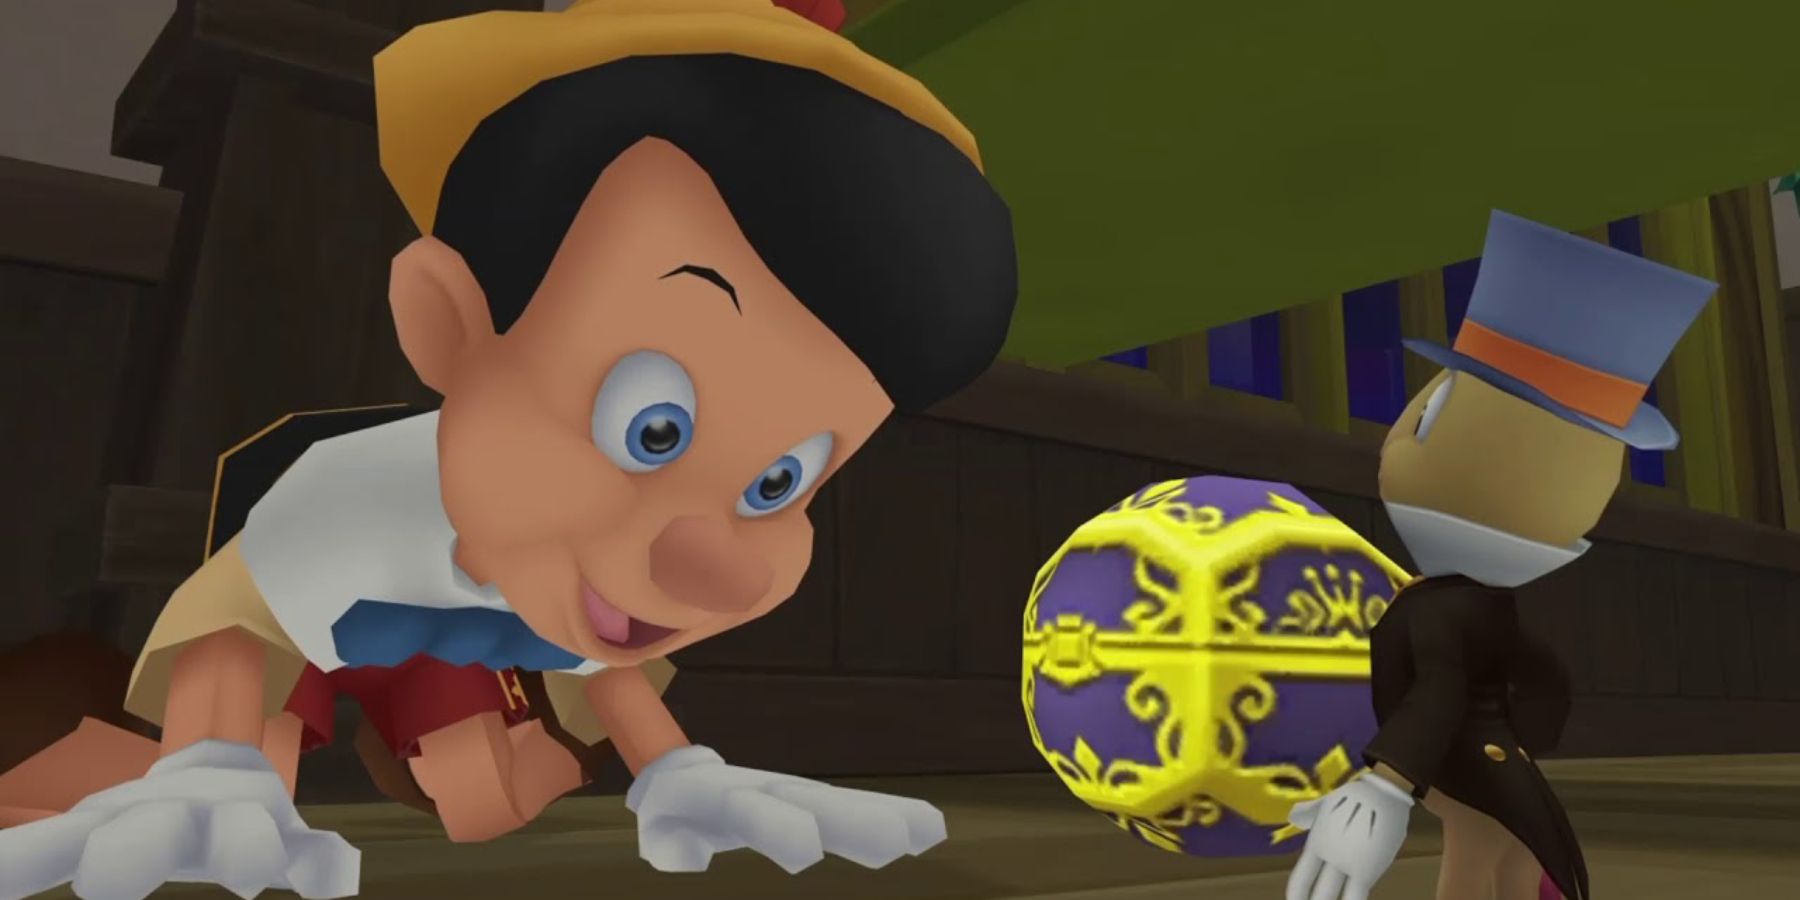 Jiminy Cricket and Pinocchio in Kingdom Hearts 1